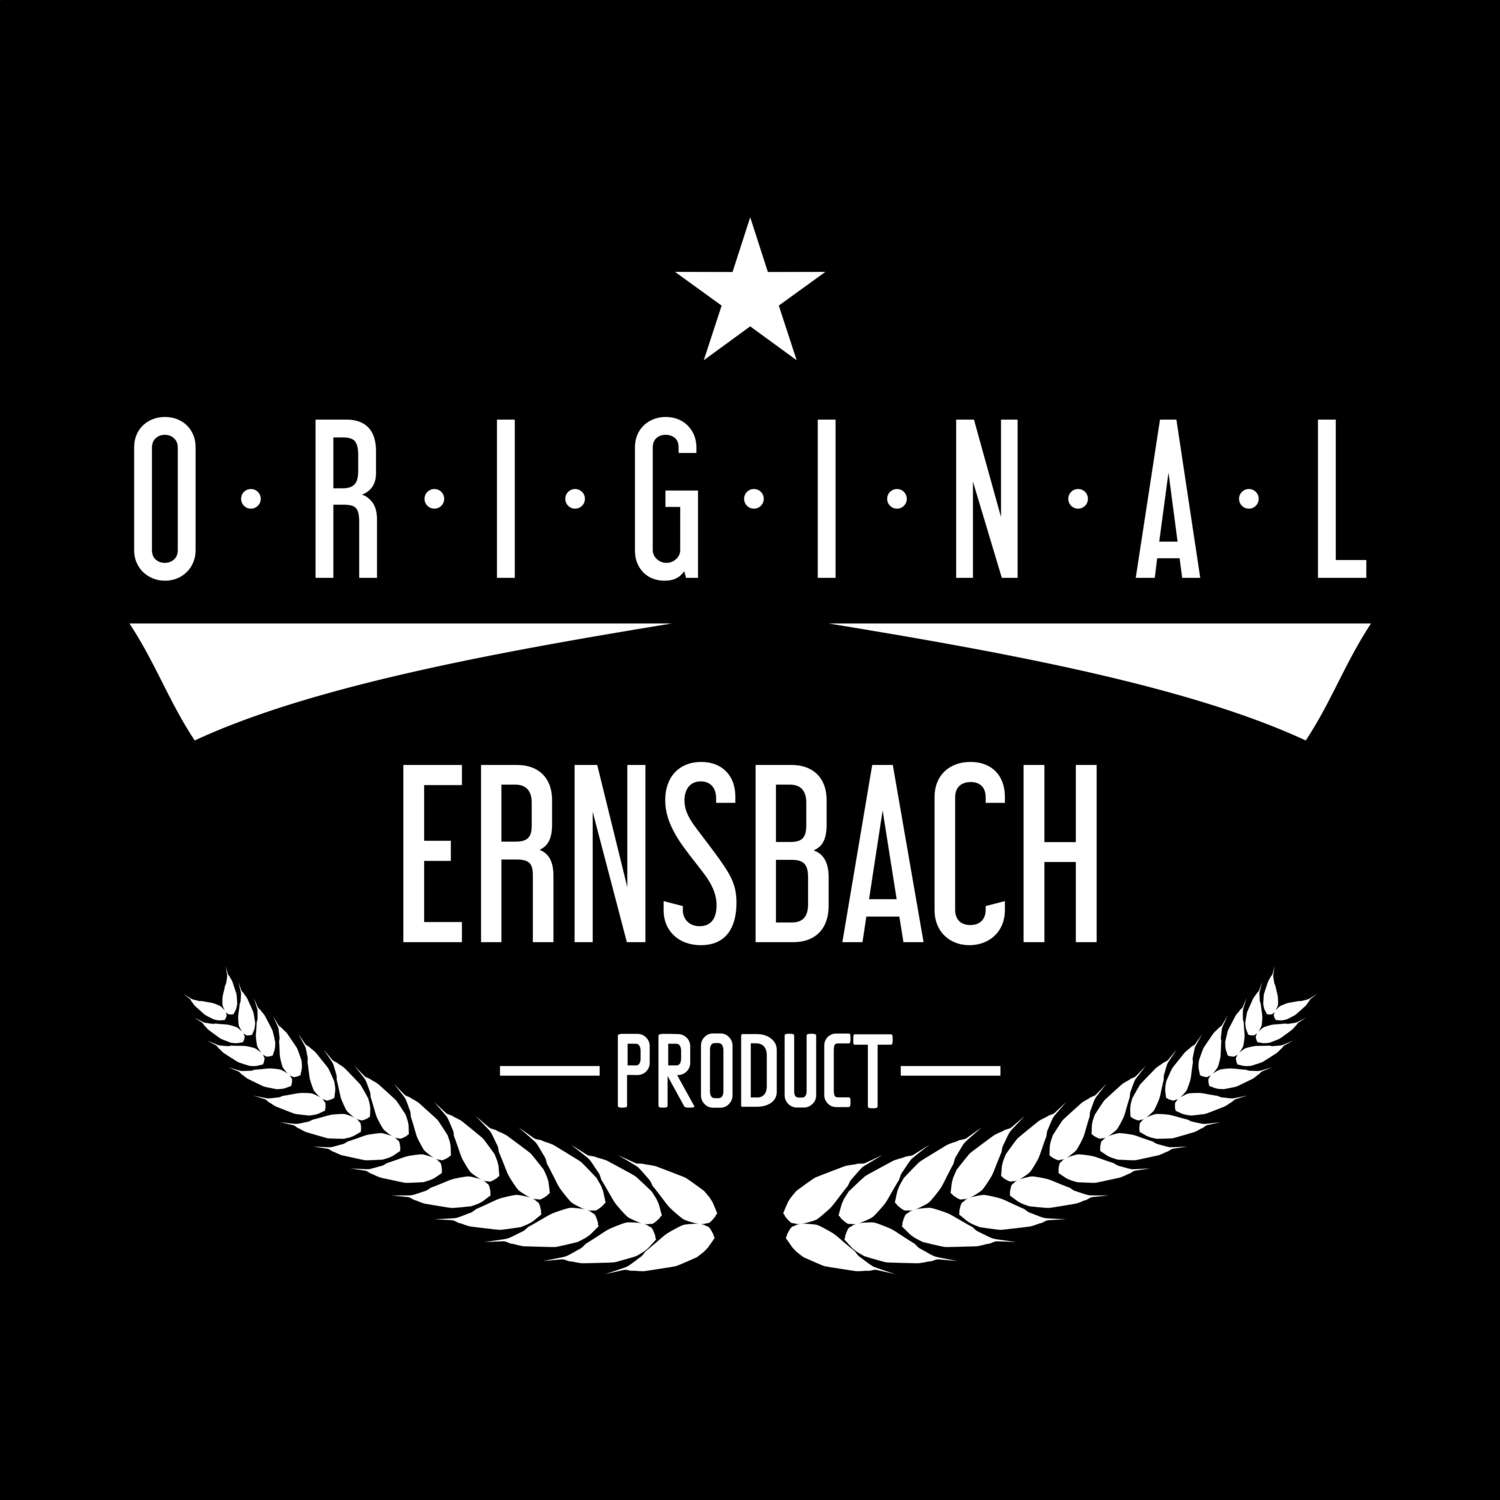 Ernsbach T-Shirt »Original Product«